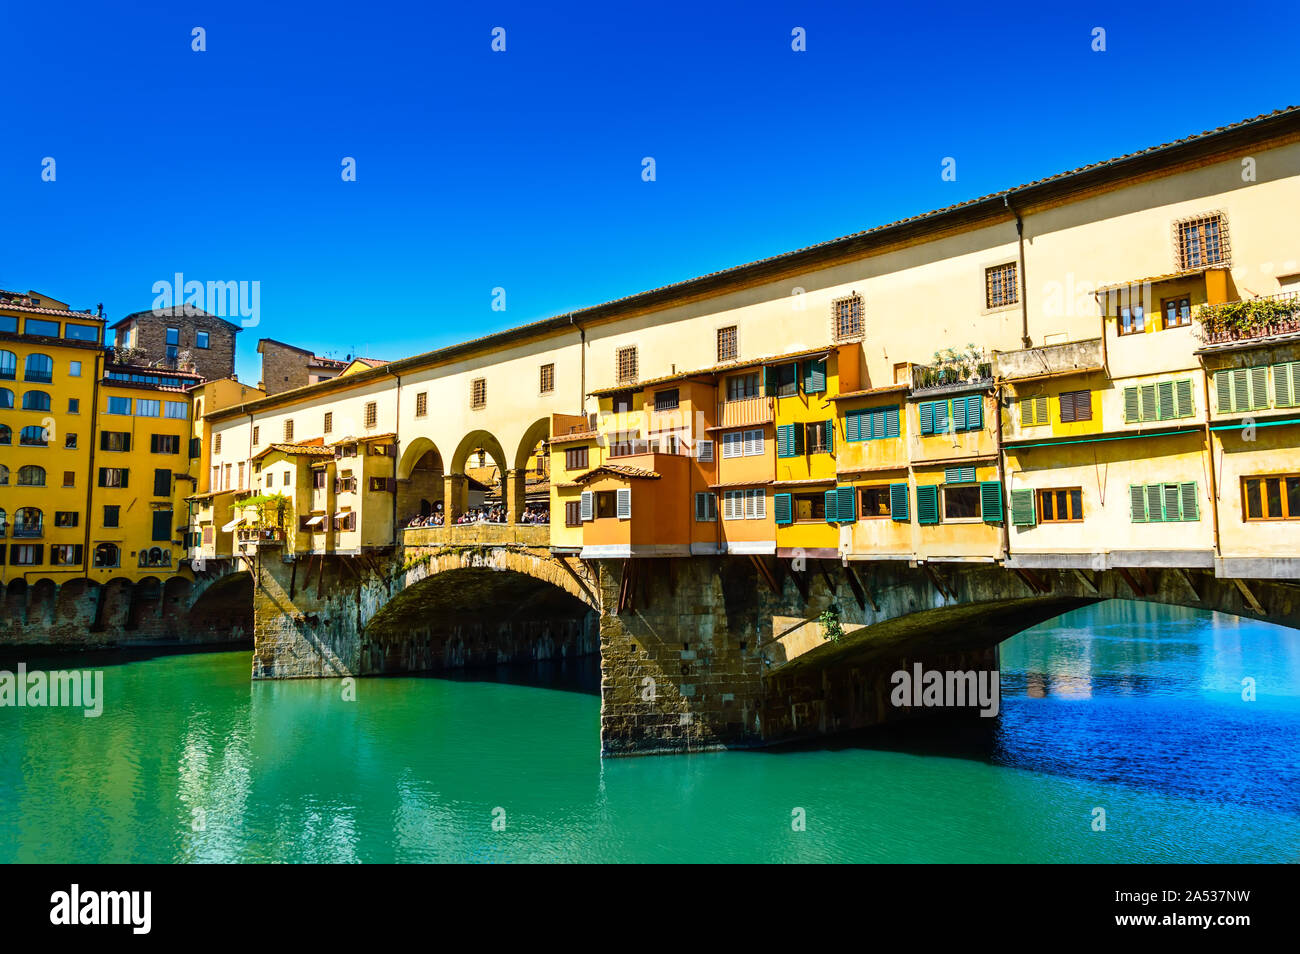 Ponte Vecchio o il Vecchio Ponte sul fiume Arno a Firenze, Italia. Ponte di arco con gioielli e negozi d'arte e i suoi edifici colorati è una famosa località turistica Foto Stock